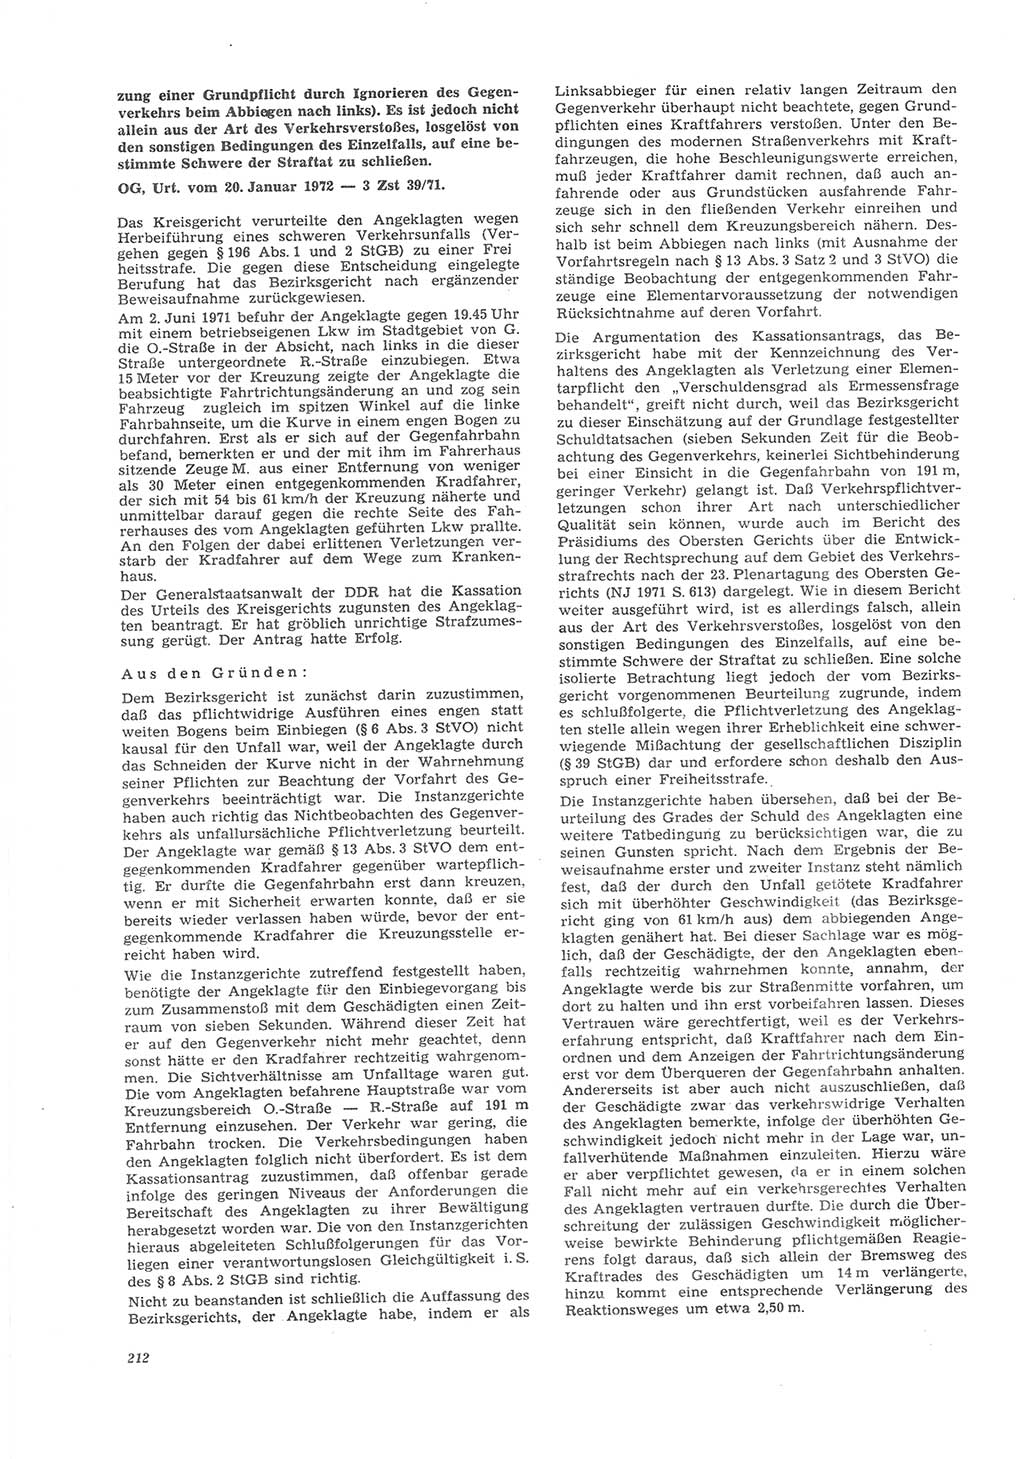 Neue Justiz (NJ), Zeitschrift für Recht und Rechtswissenschaft [Deutsche Demokratische Republik (DDR)], 26. Jahrgang 1972, Seite 212 (NJ DDR 1972, S. 212)